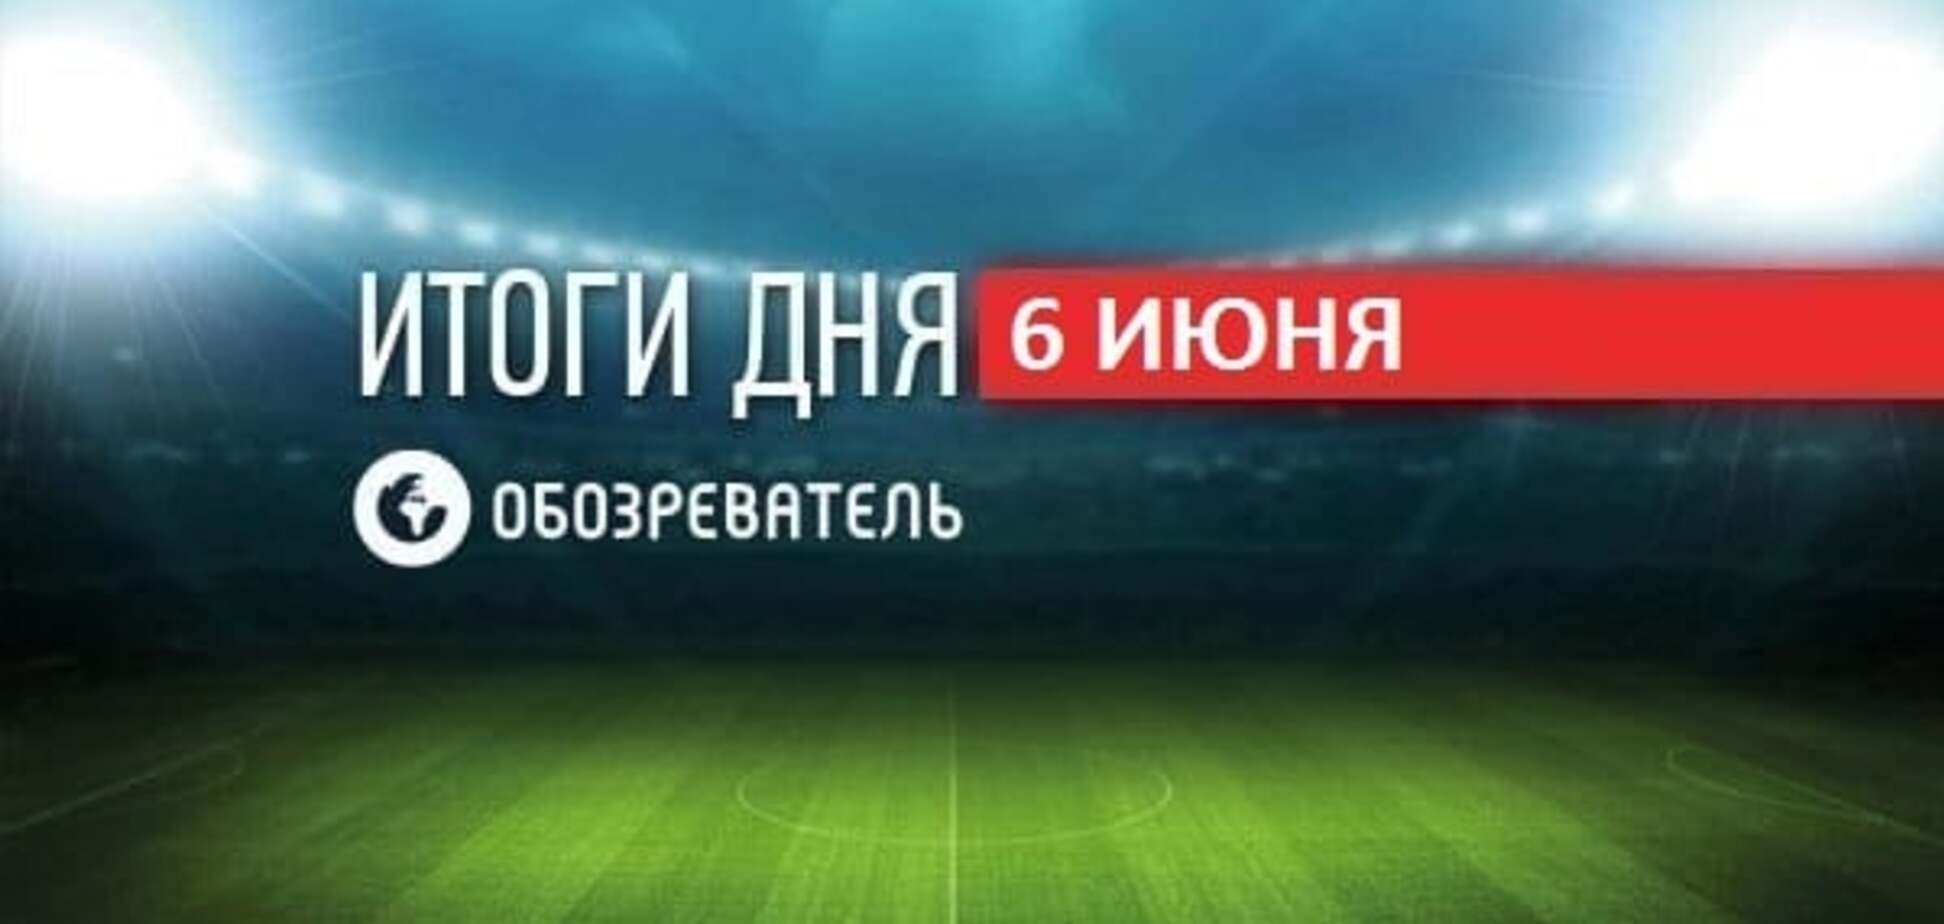 Английский гранд покупает игрока сборной Украины. Спортивные итоги 6 июня